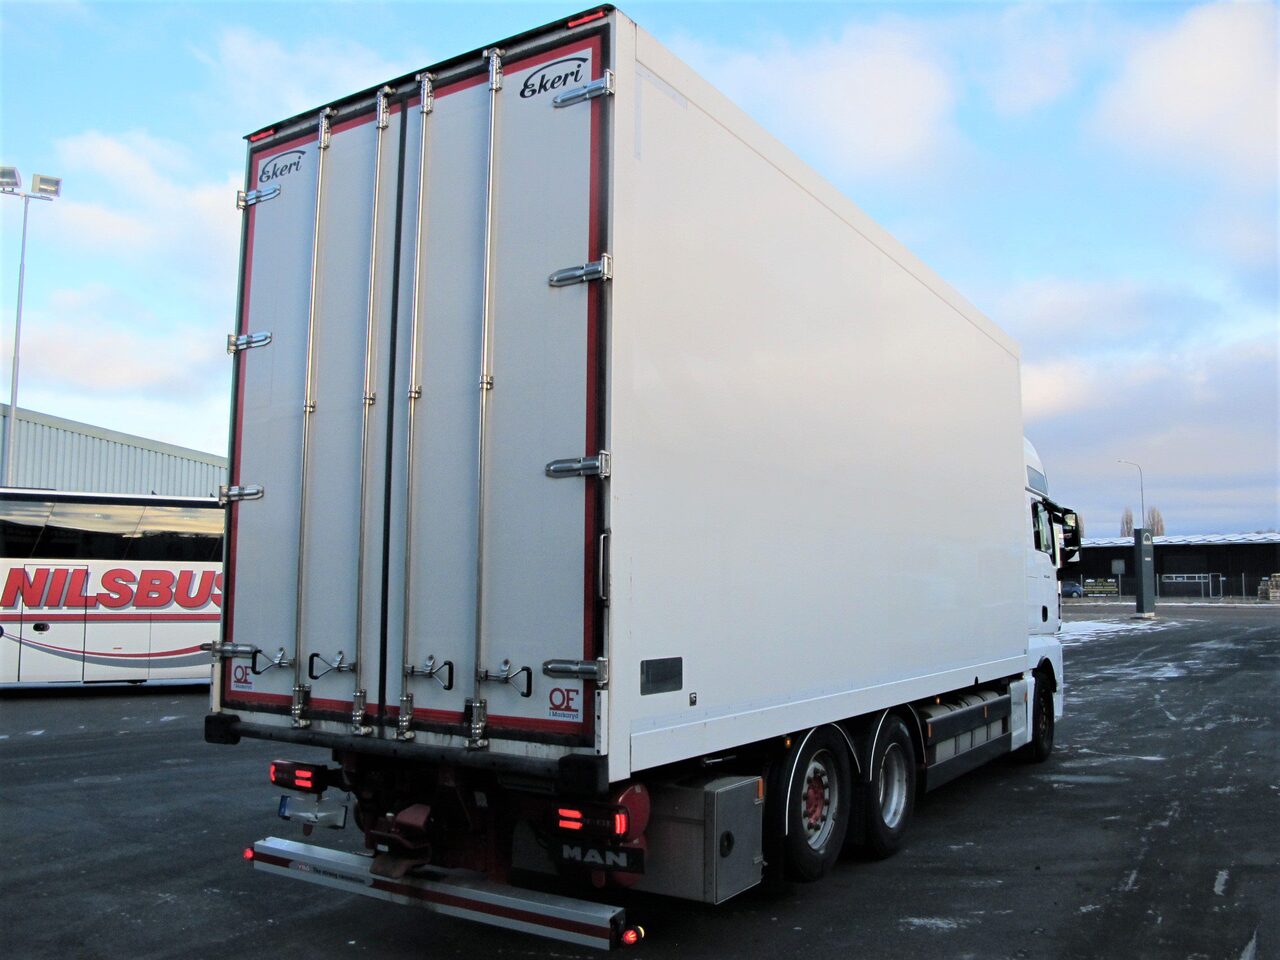 Box truck MAN TGX 28.510 6×2/4 Fjärrbil - Truck1 ID - 7204485